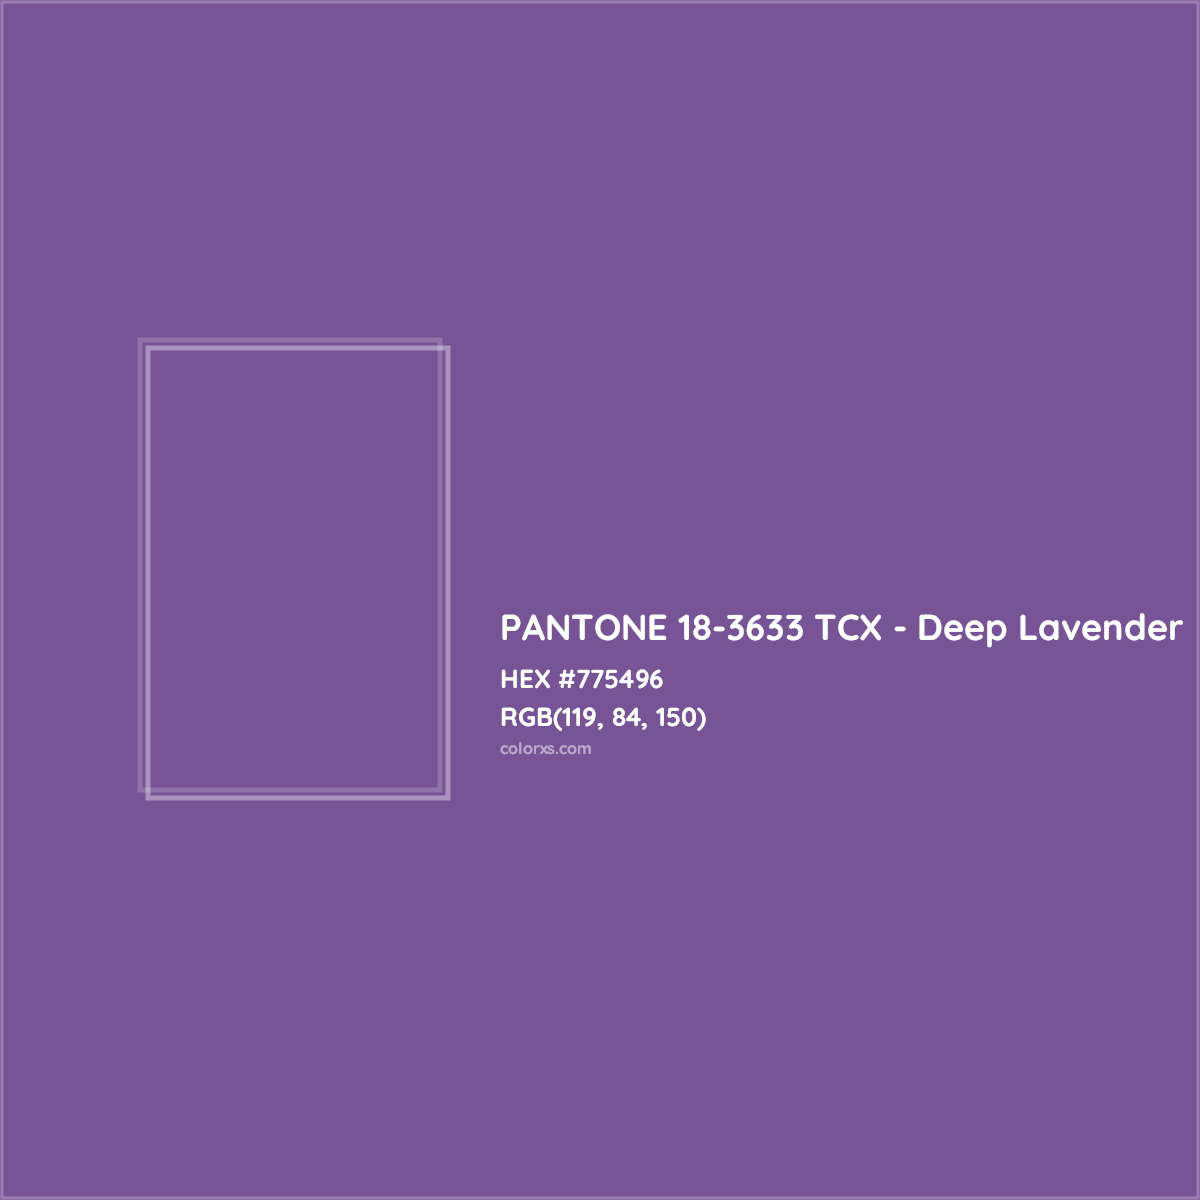 HEX #775496 PANTONE 18-3633 TCX - Deep Lavender CMS Pantone TCX - Color Code